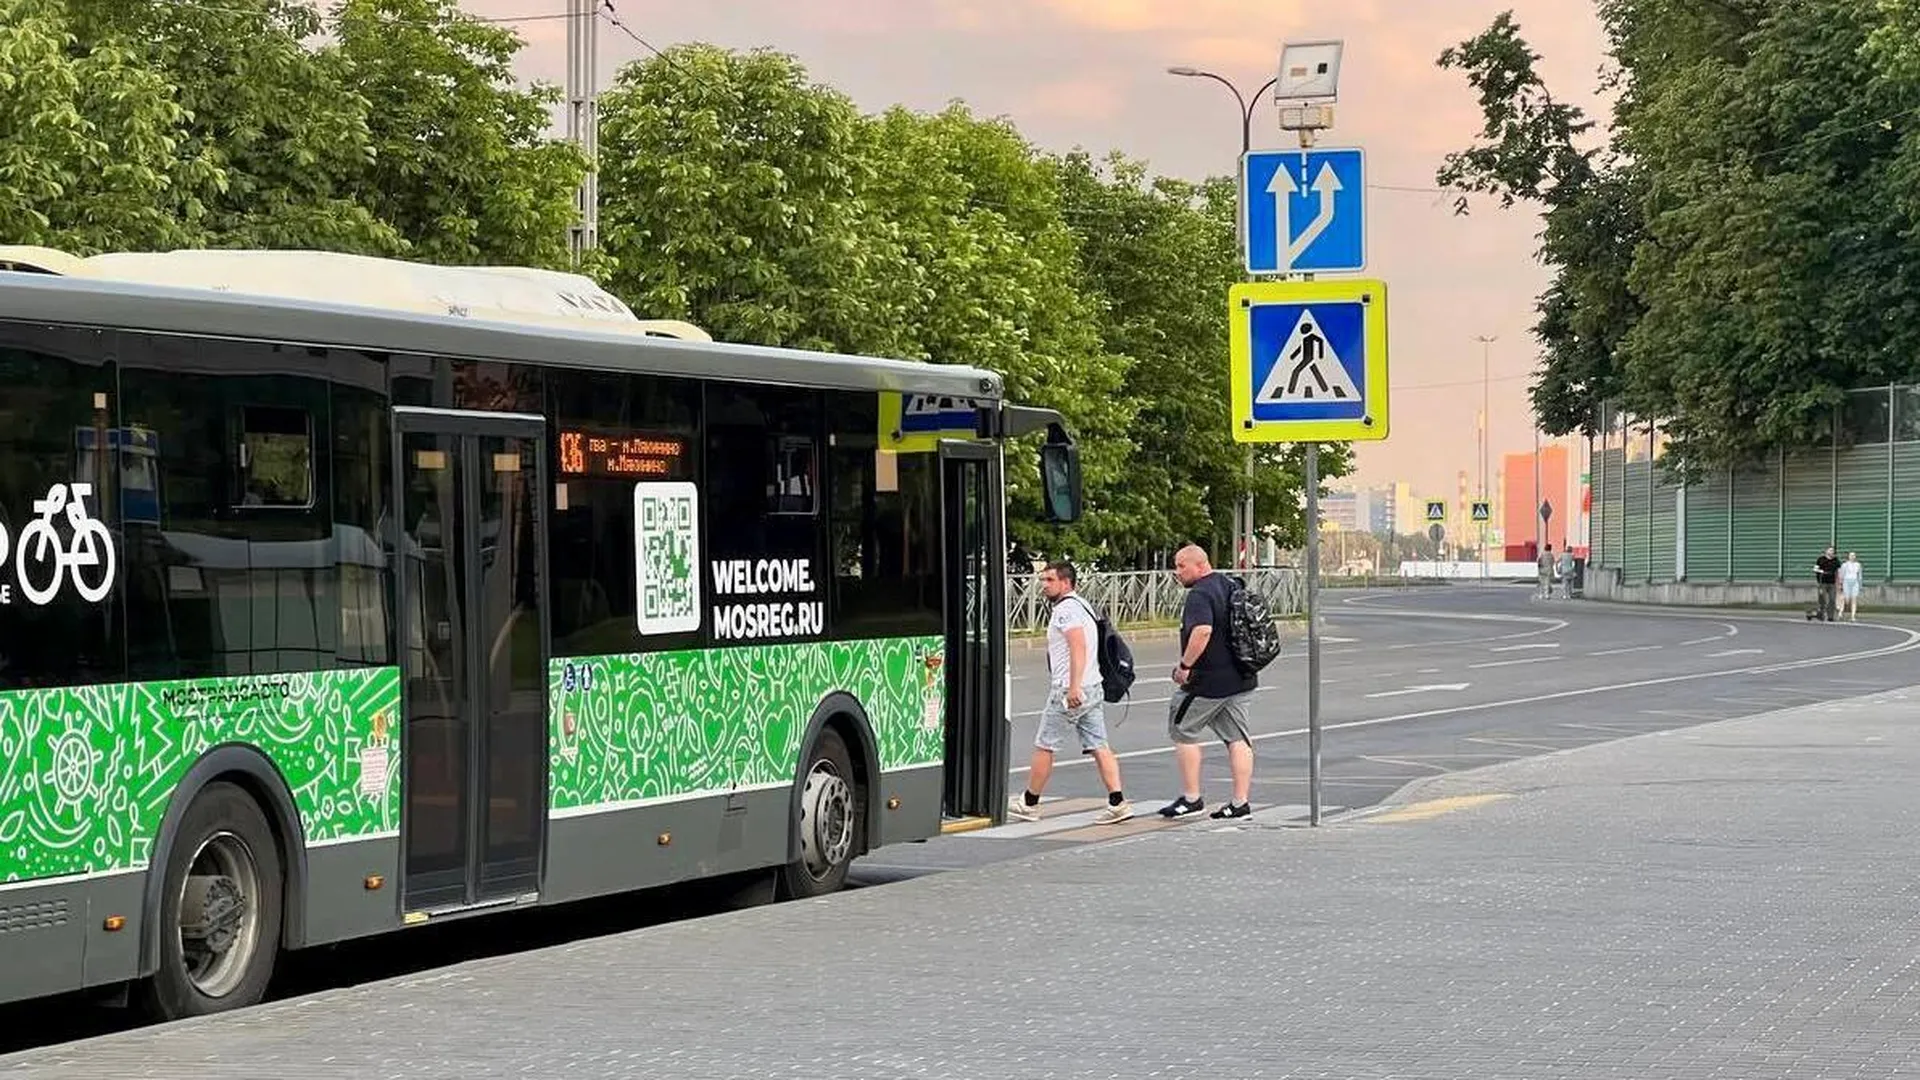 Более полутора миллионов поездок совершено в автобусах с баннерами «Лето в Подмосковье»